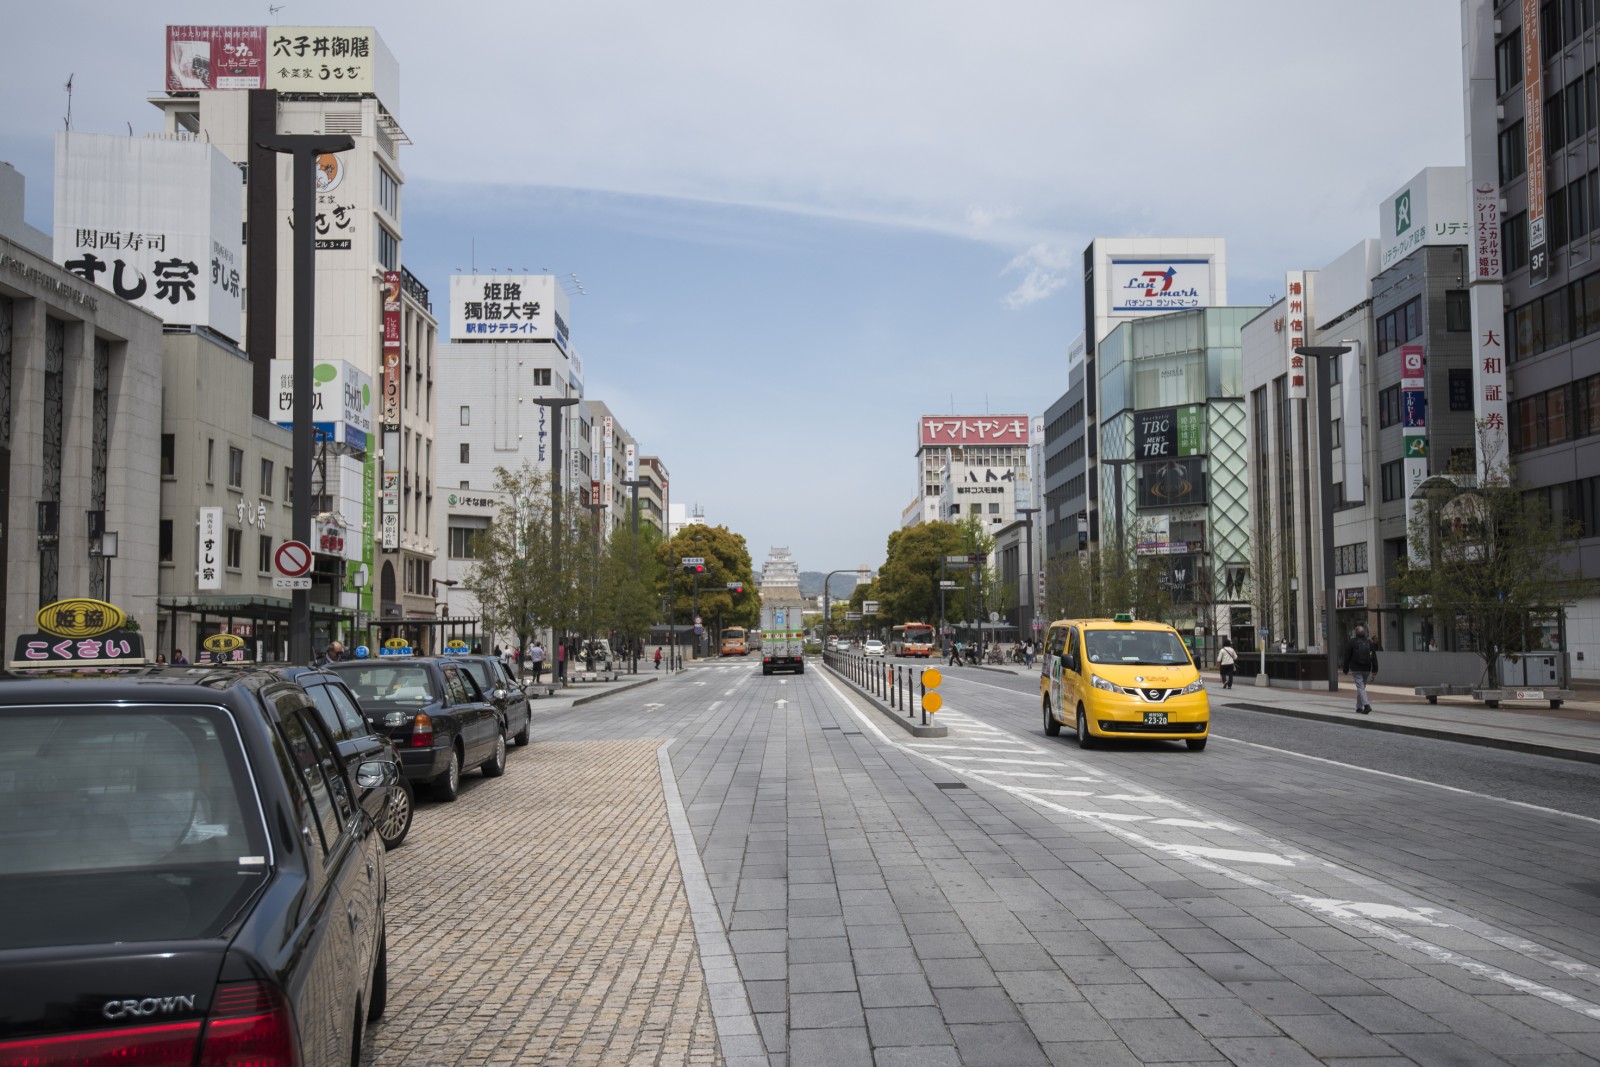 T vendo o Castelo Himeji l no finalzinho da avenida? Aproveite pra olhar que rua suja, desalinhada, mal cuidada... ;)